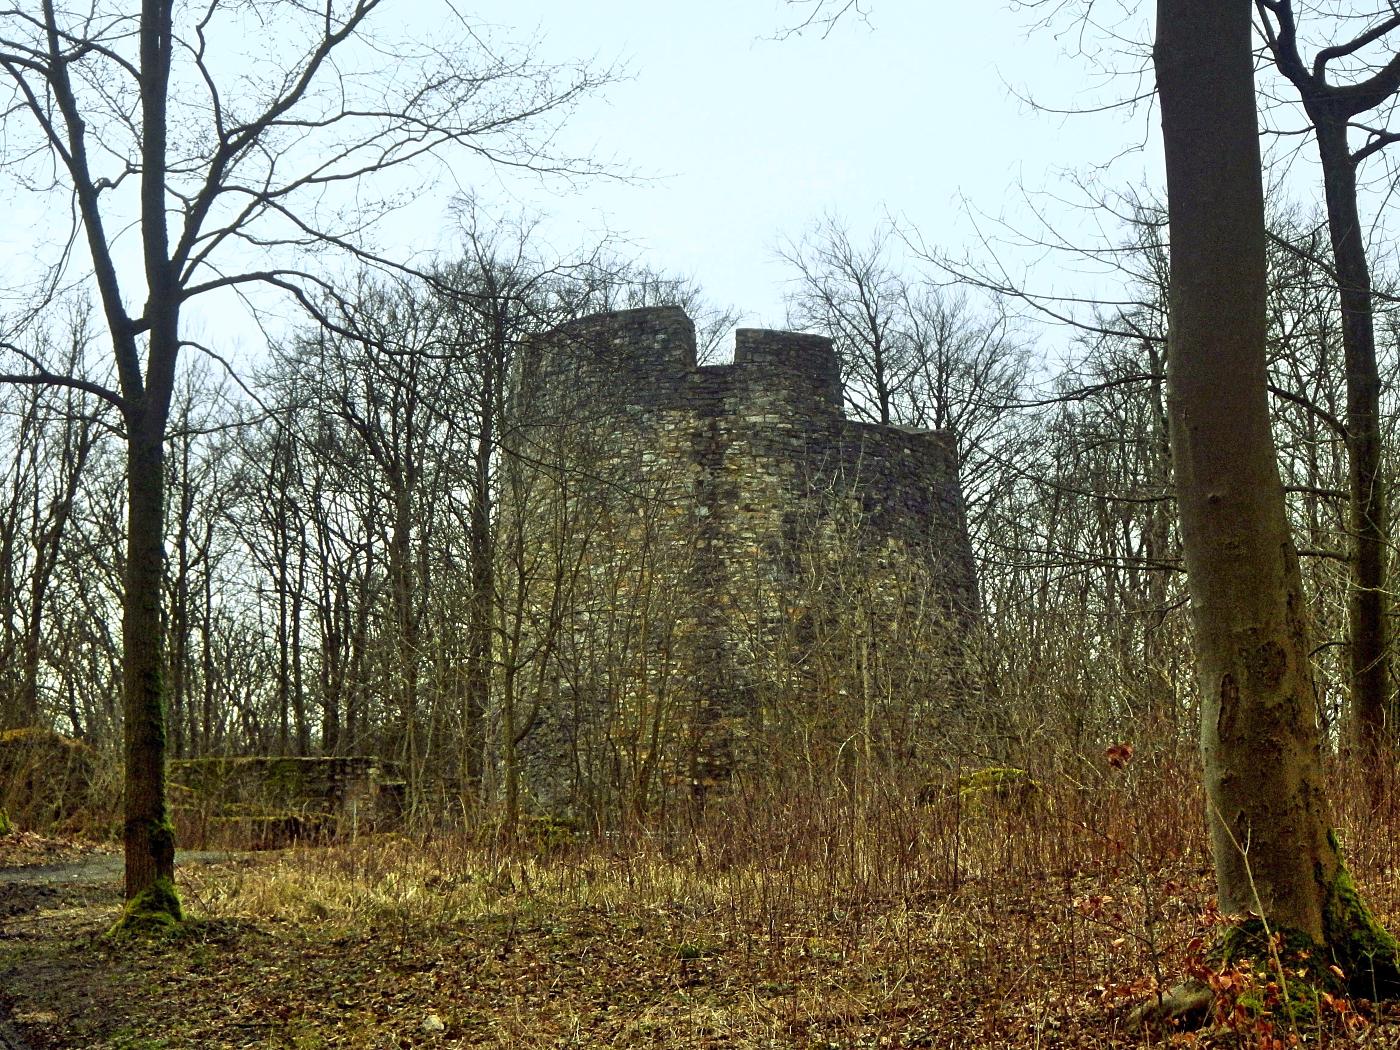 Turm "Bergfried" der Ruine Iburg